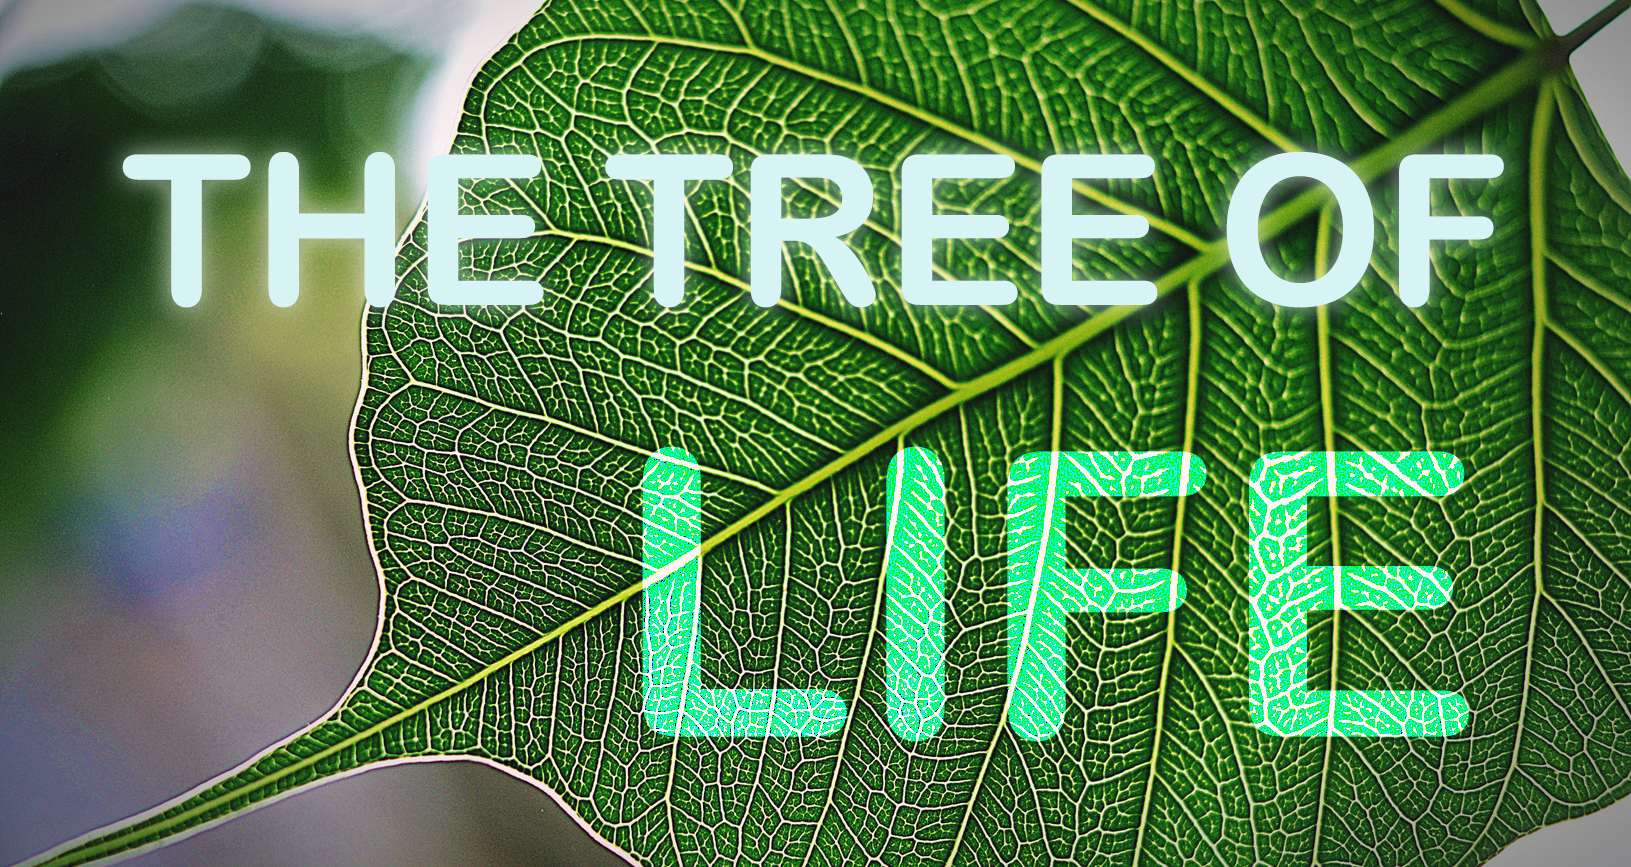 PEEPAL : THE TREE OF LIFE